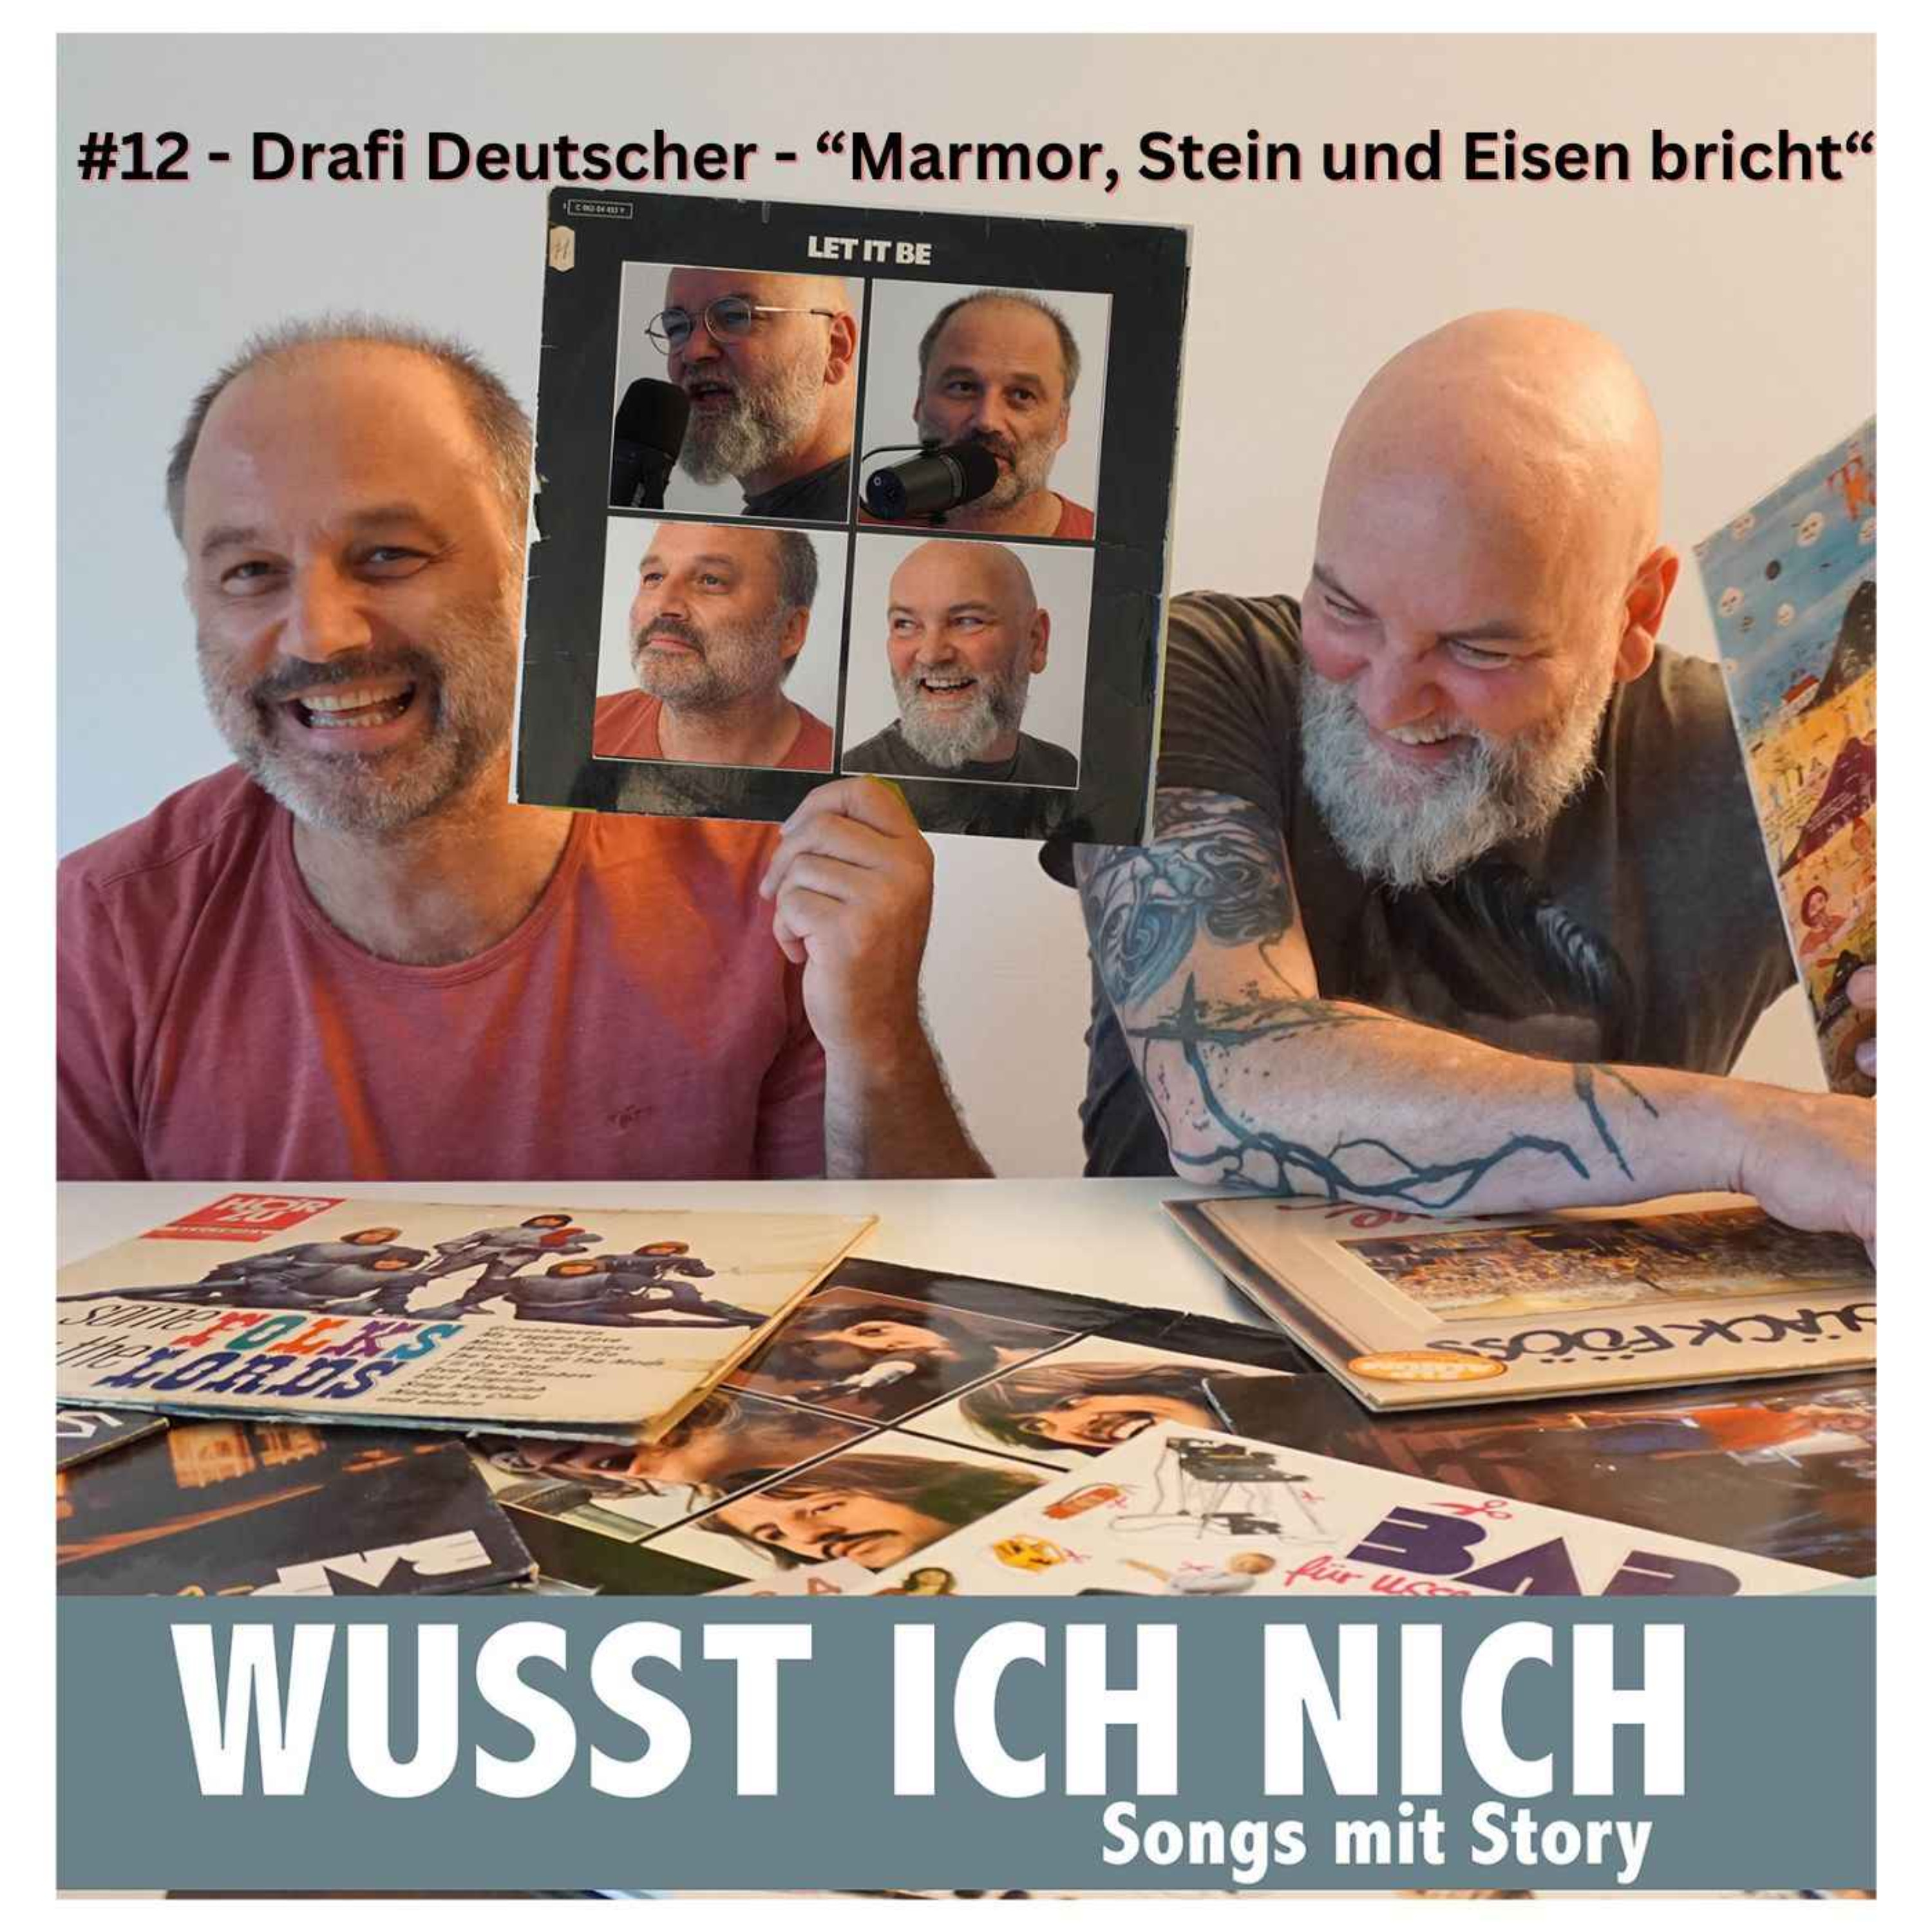 cover art for Drafi Deutscher "Marmor, Stein und Eisen bricht"